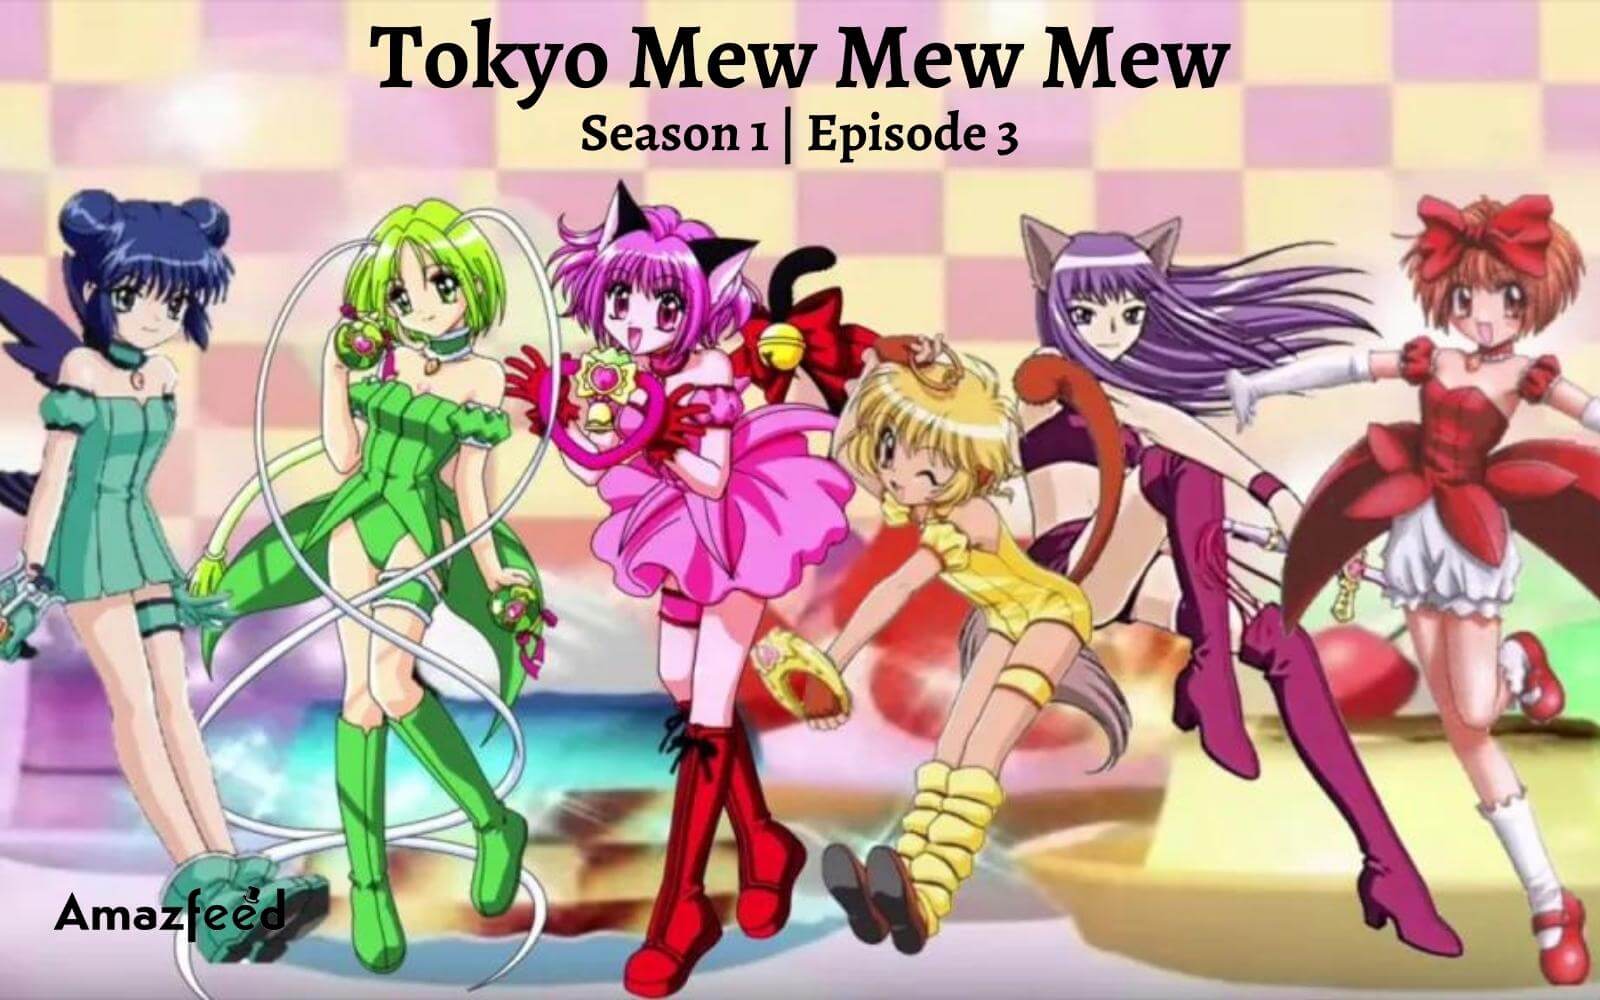 TOKYO MEW MEW NEW - Season 1 Episode 3